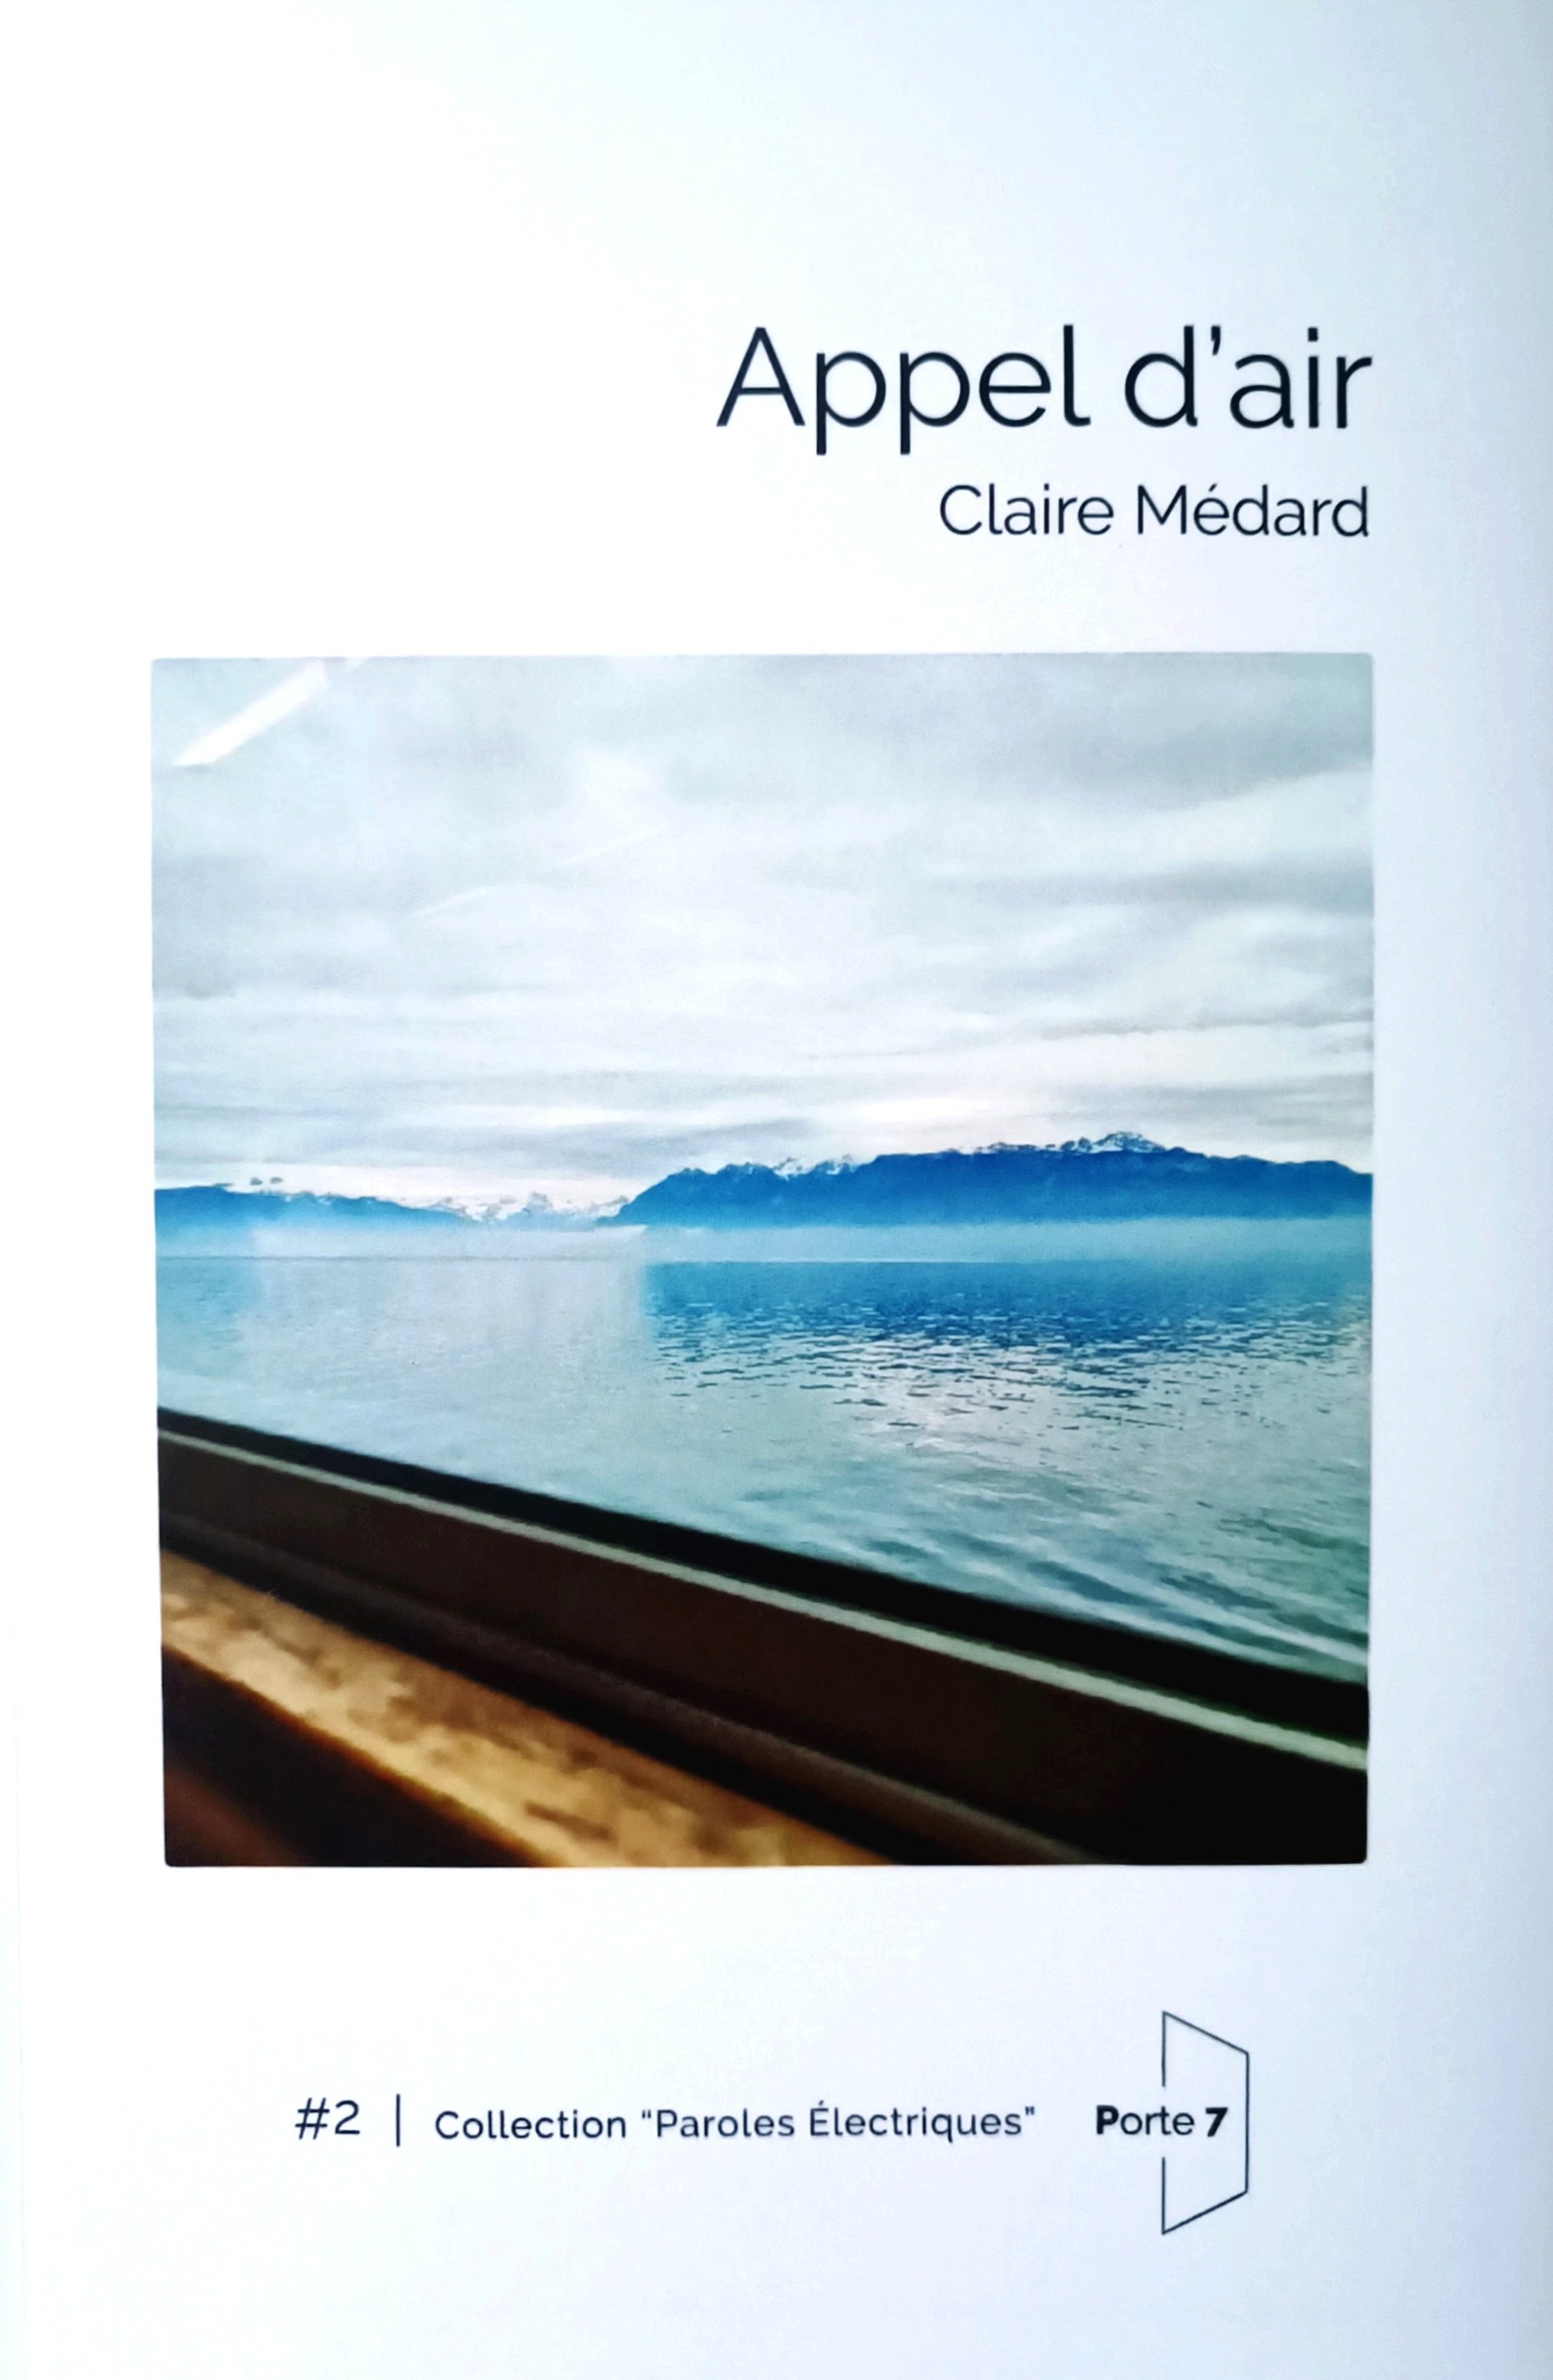 RECUEIL - Une poésie qui ne manque pas d'air : Claire Médard, "Appel d'air"